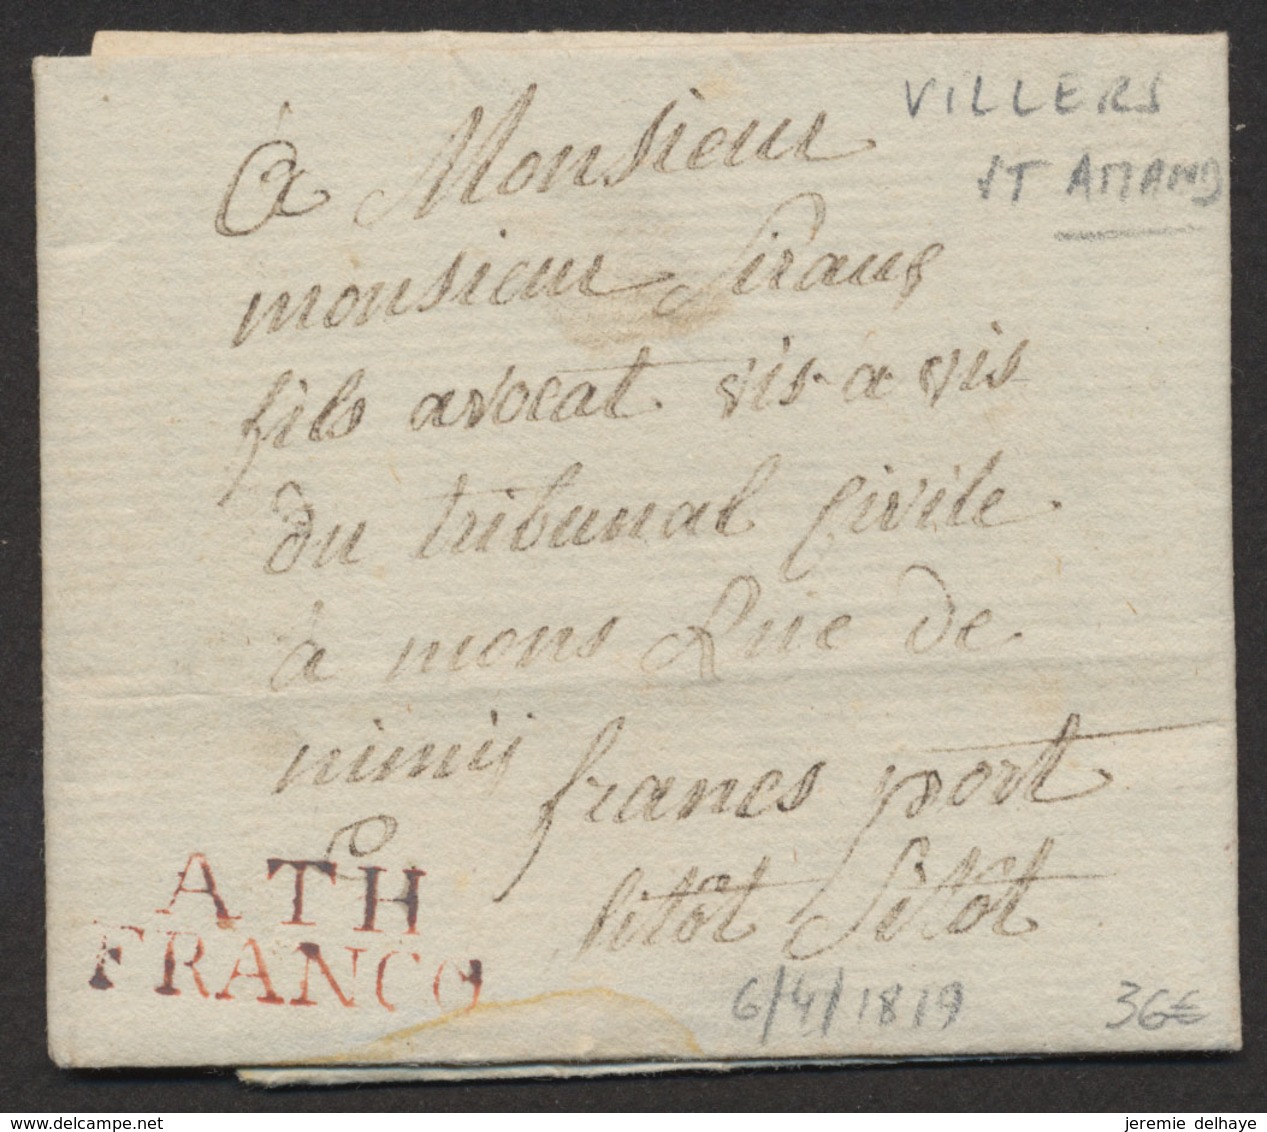 LAC Datée De Villers-St-Amand (1819) + Obl Linéaire ATH / FRANCO, Manusc. "Franc Port" Et "Sitot Sitot" > Mons - 1815-1830 (Periodo Holandes)